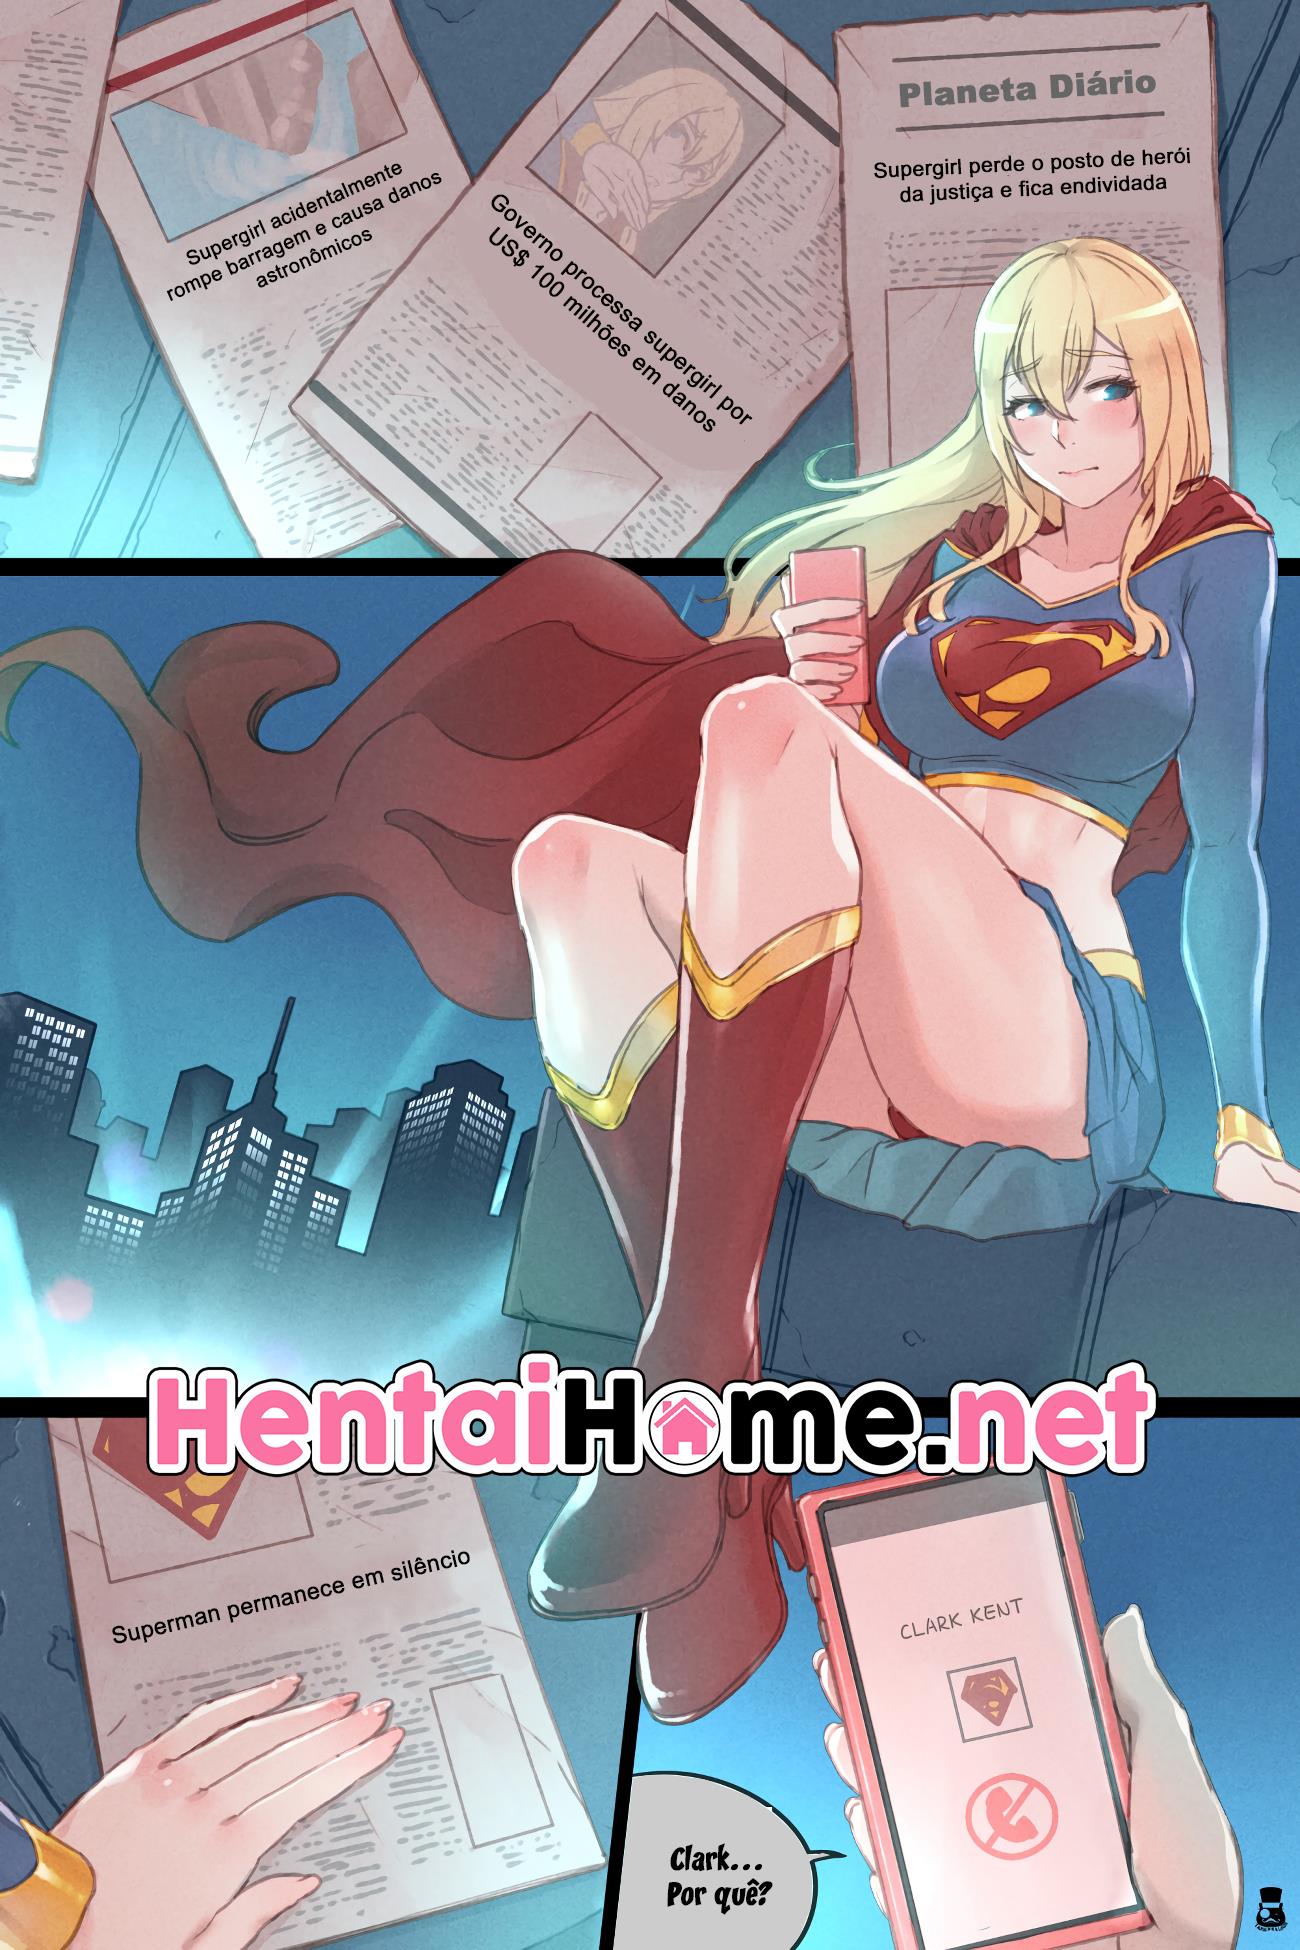 Supergirl heroína no cio - Foto 2